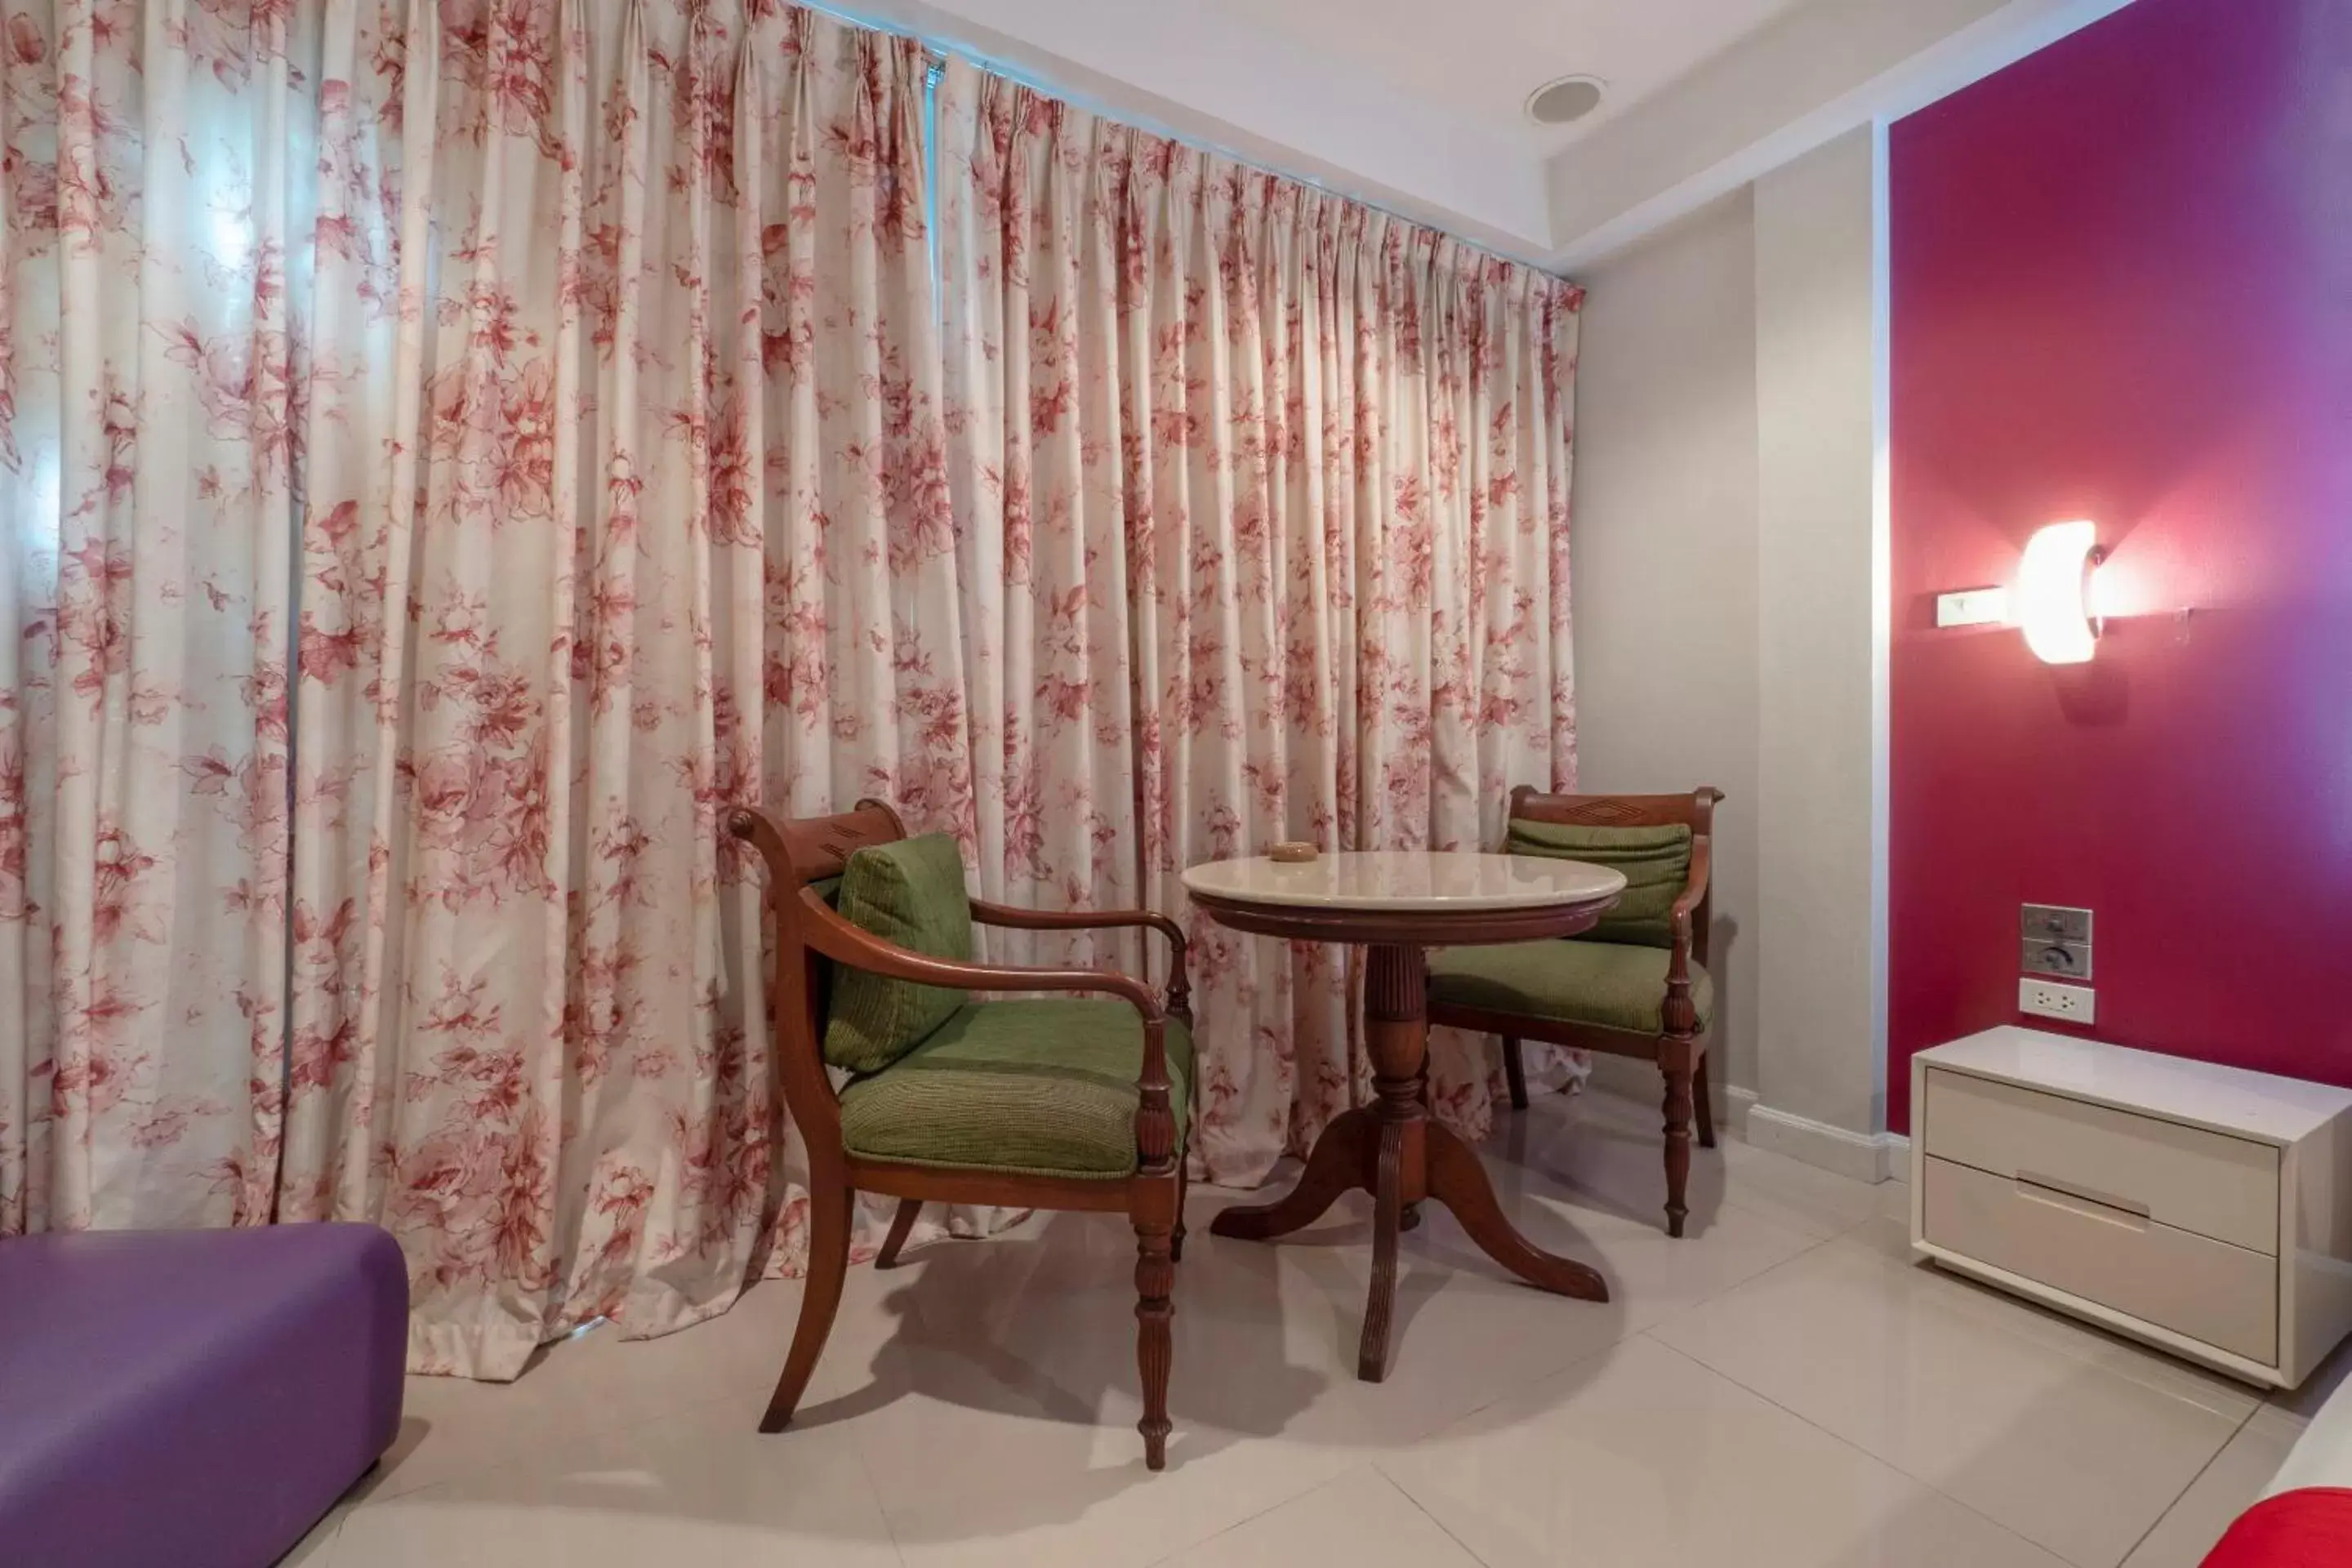 Bedroom, Dining Area in Access Inn Pattaya